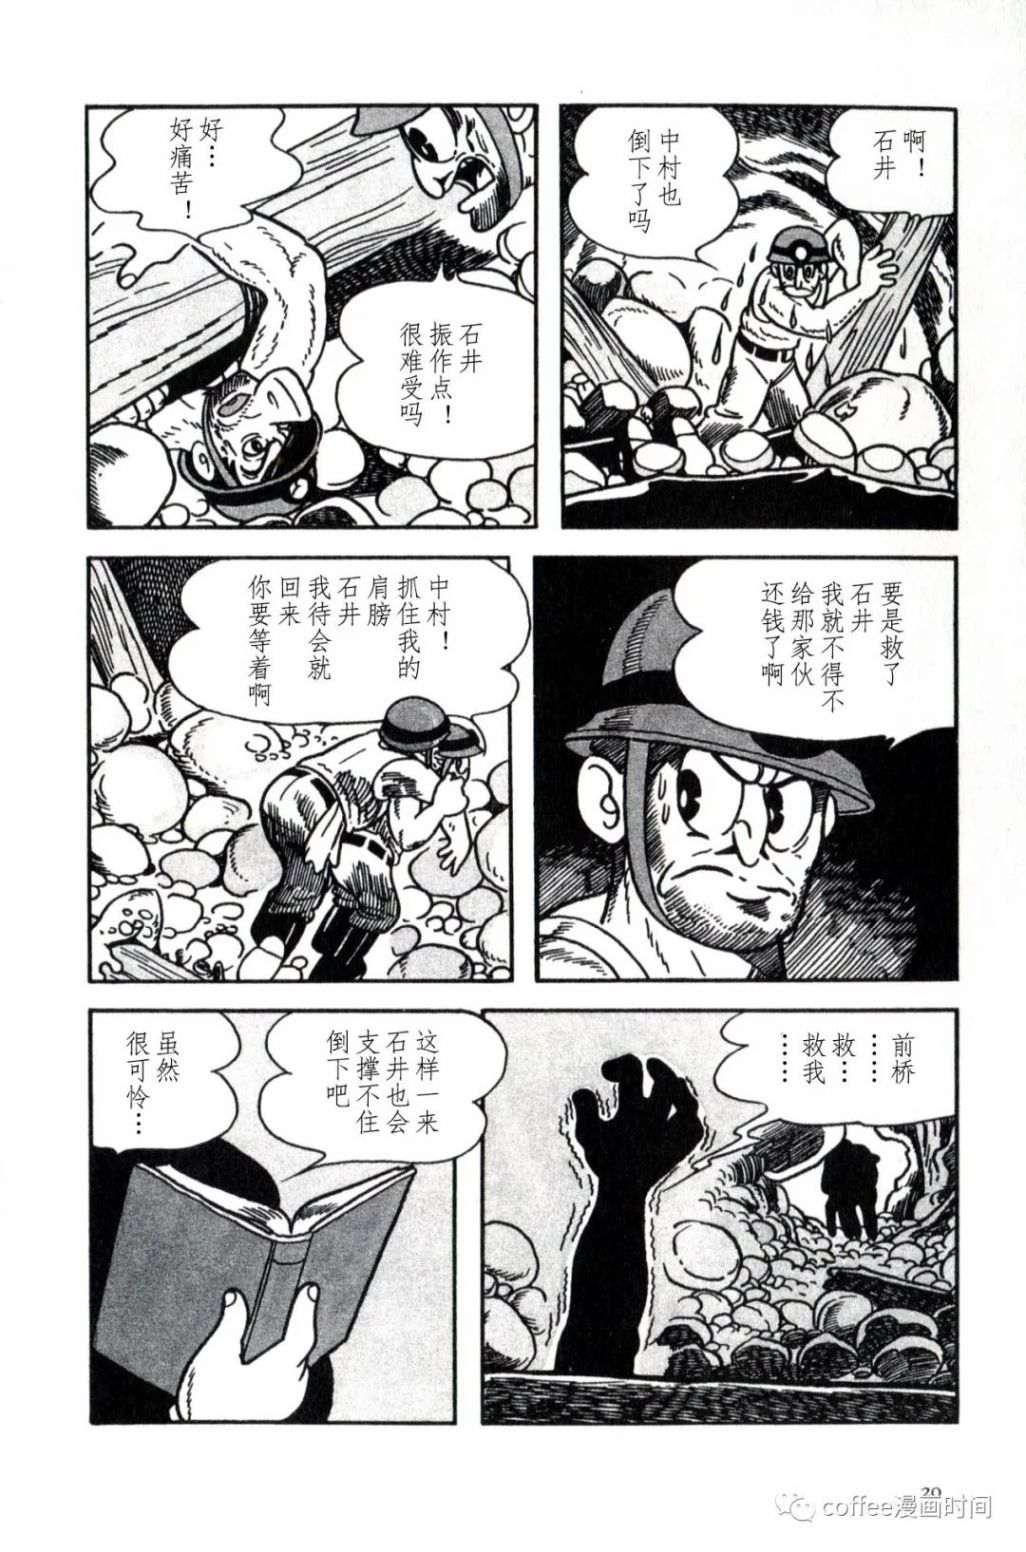 日本短篇漫畫傑作集 - 手冢治虫《落盤》 - 1